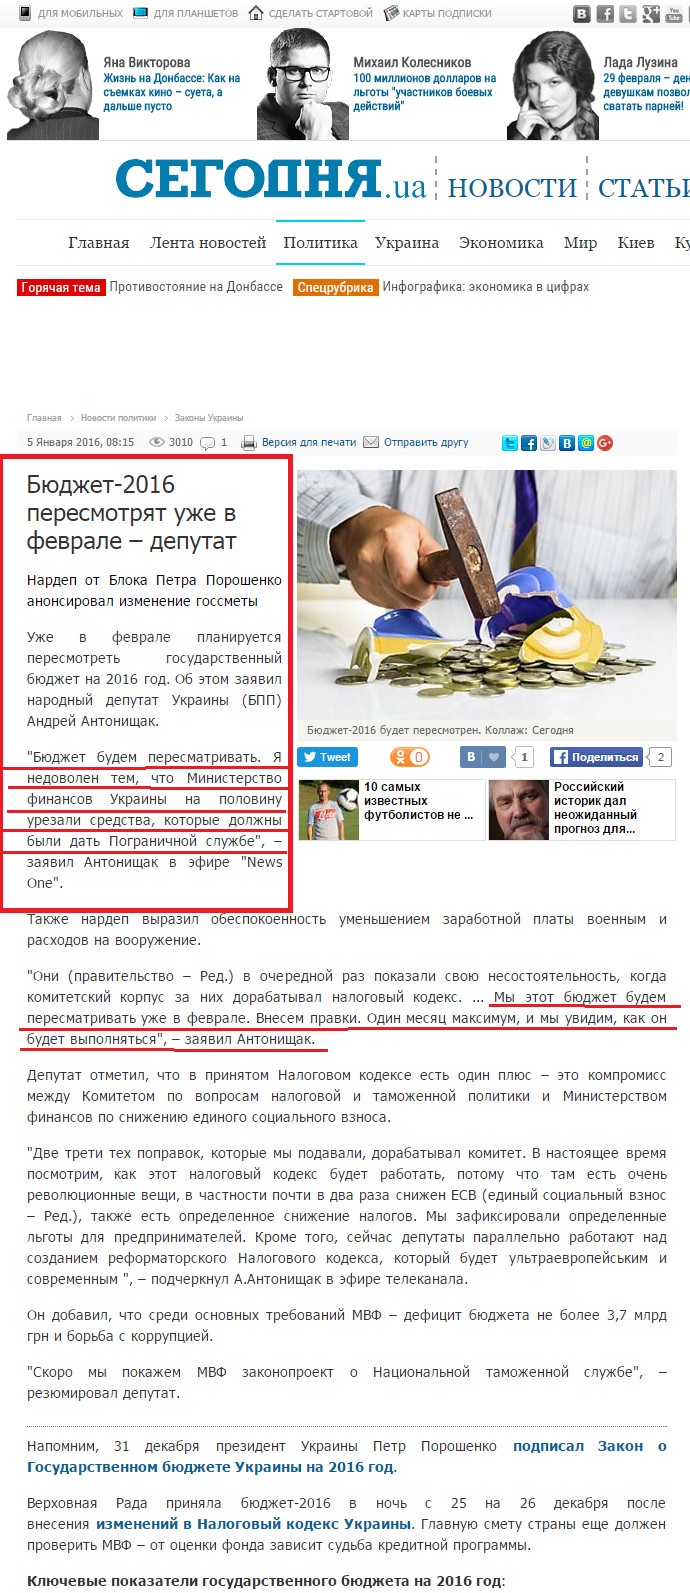 http://www.segodnya.ua/politics/laws/byudzhet-2016-peresmotryat-uzhe-v-fevrale-deputat-680686.html